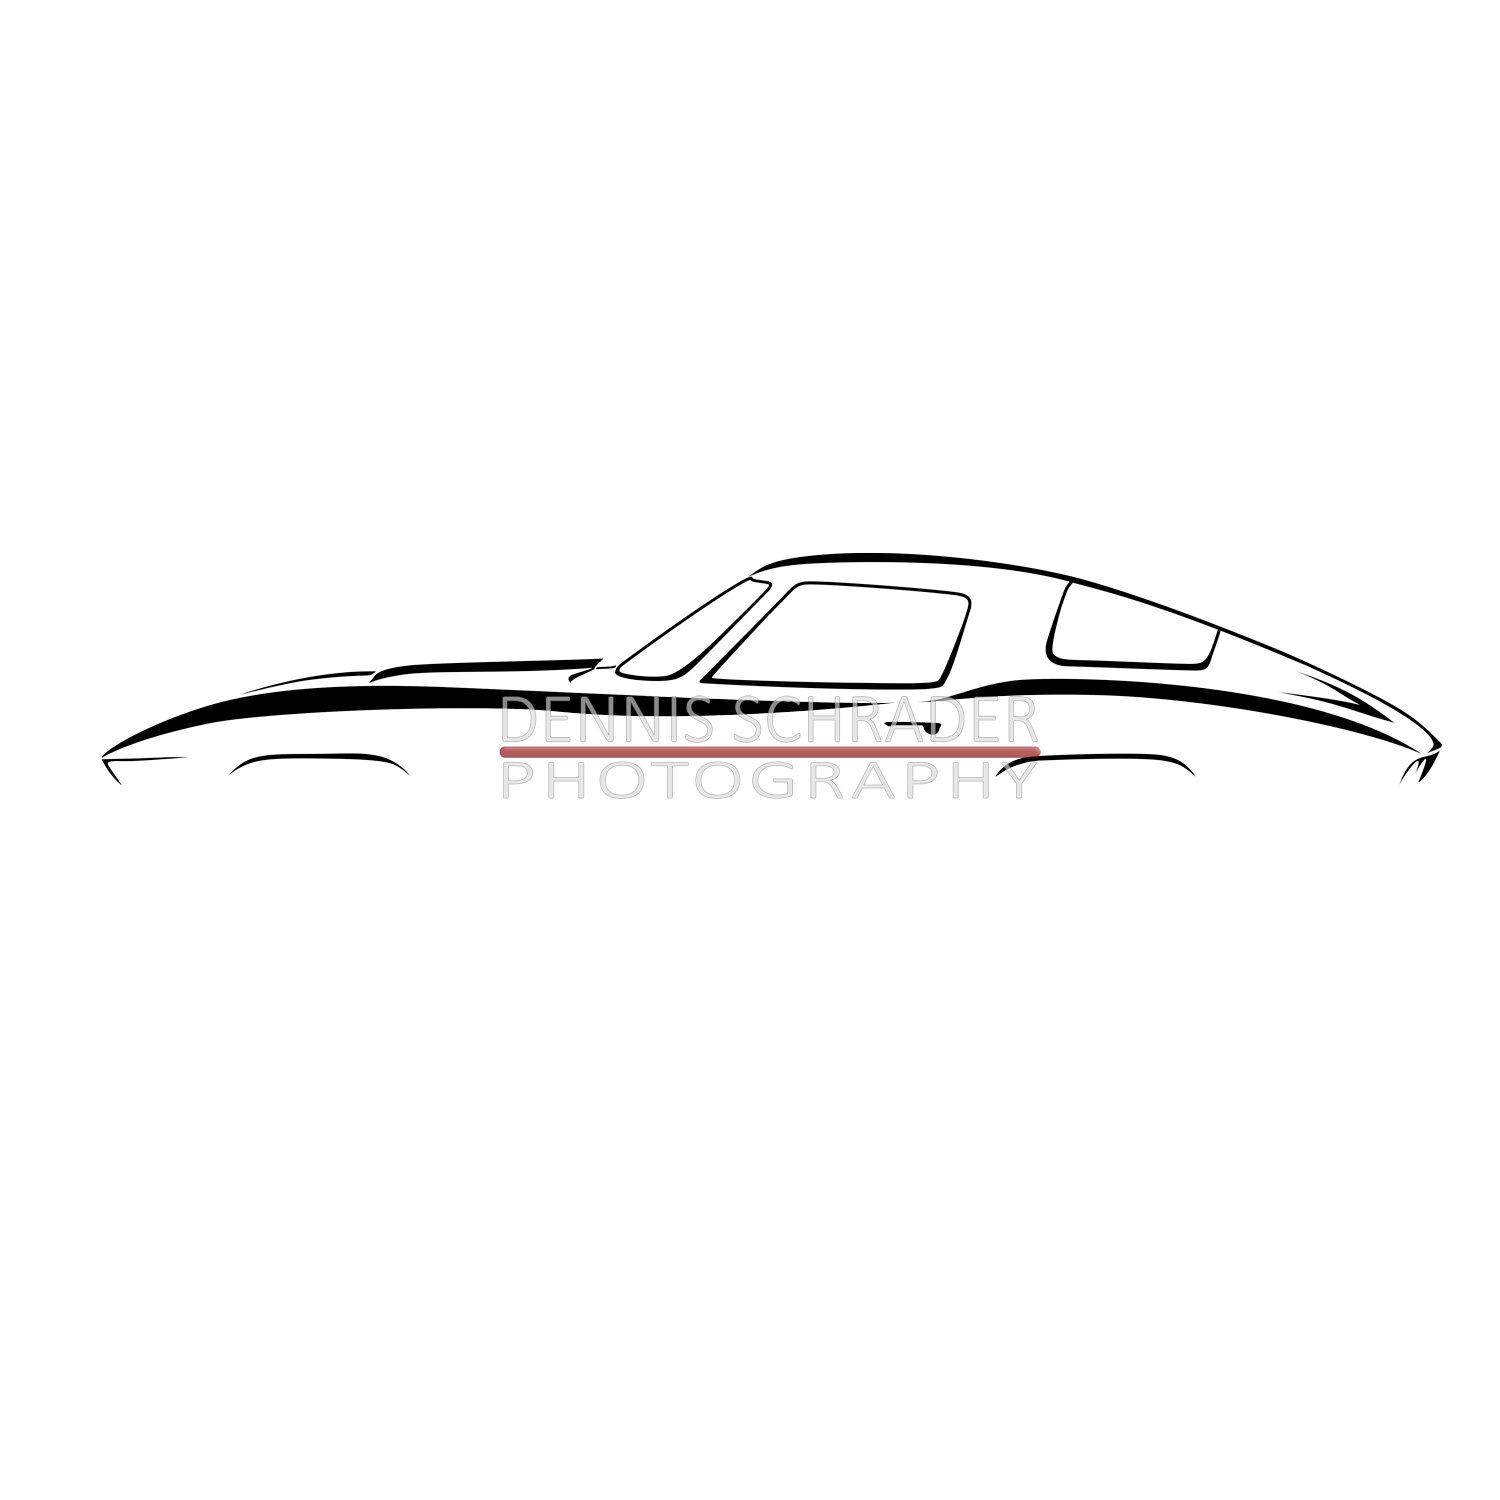 Corvette Art Details about   Chevrolet Corvette C2 Stingray Black Stripe Wall Tapestry 